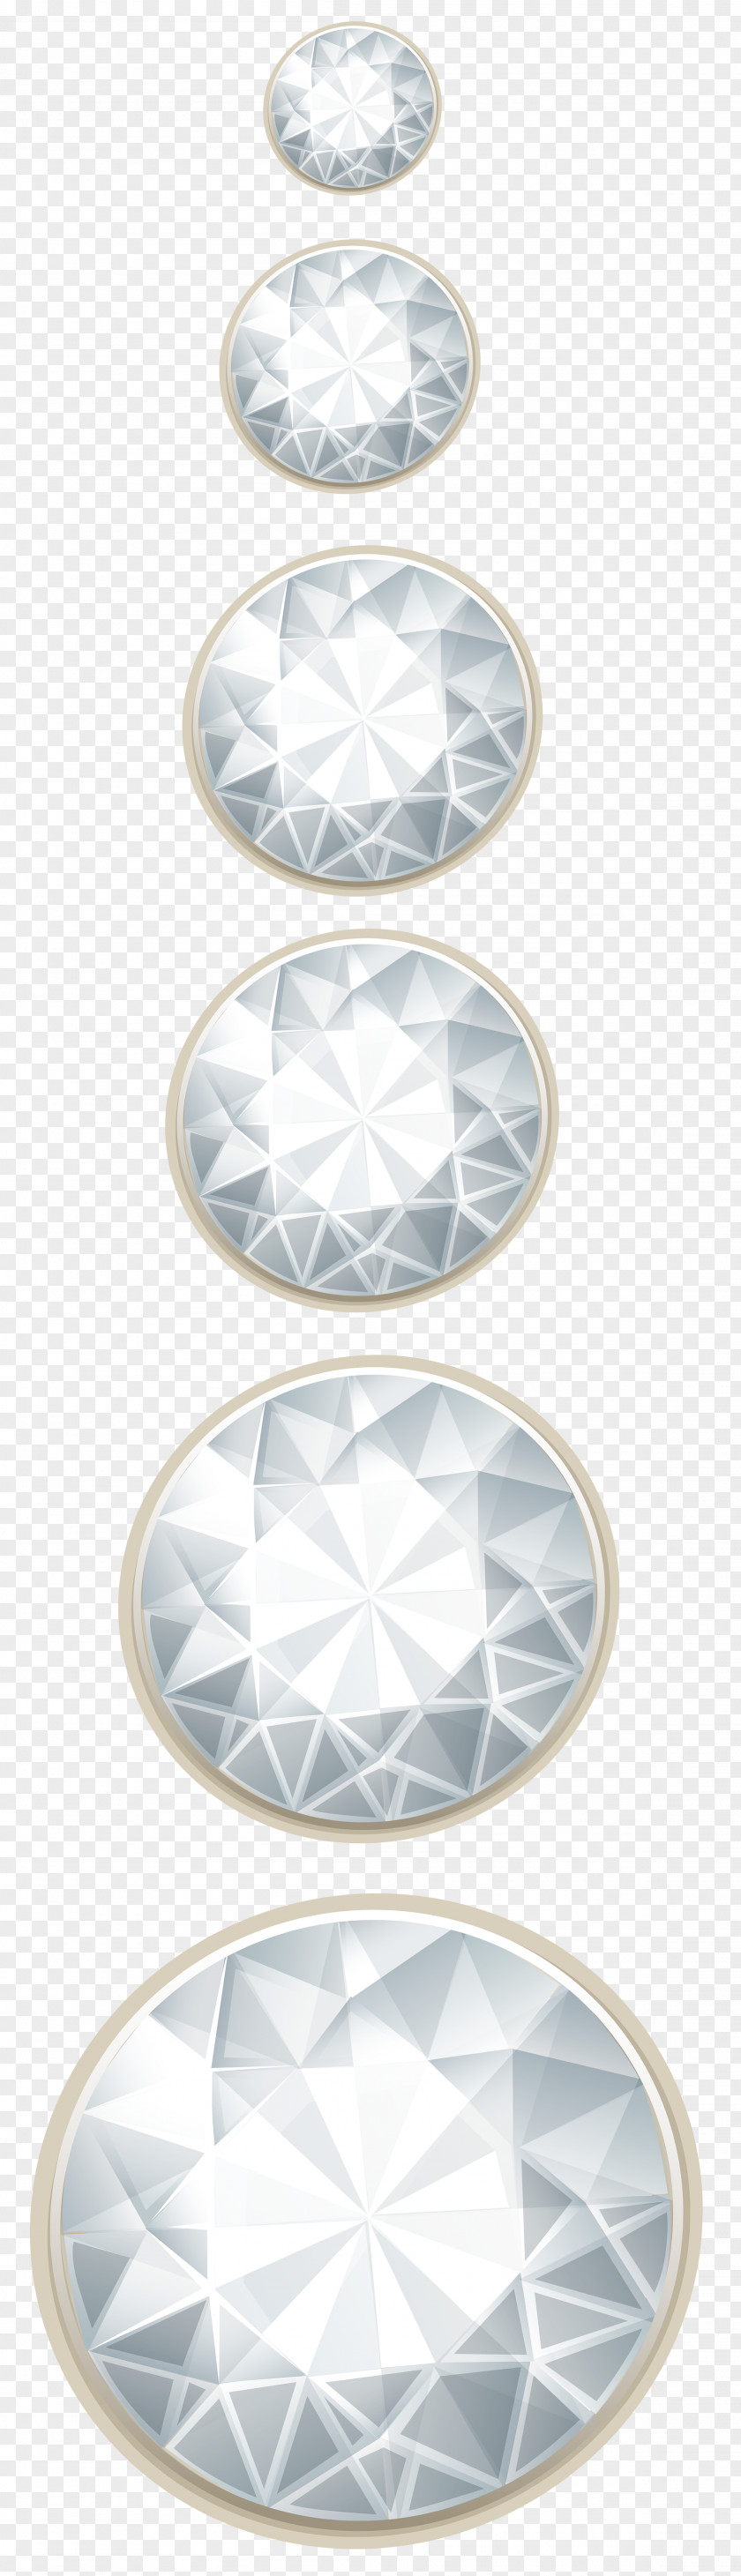 Diamond Decor Transparent Clip Art Banner PNG